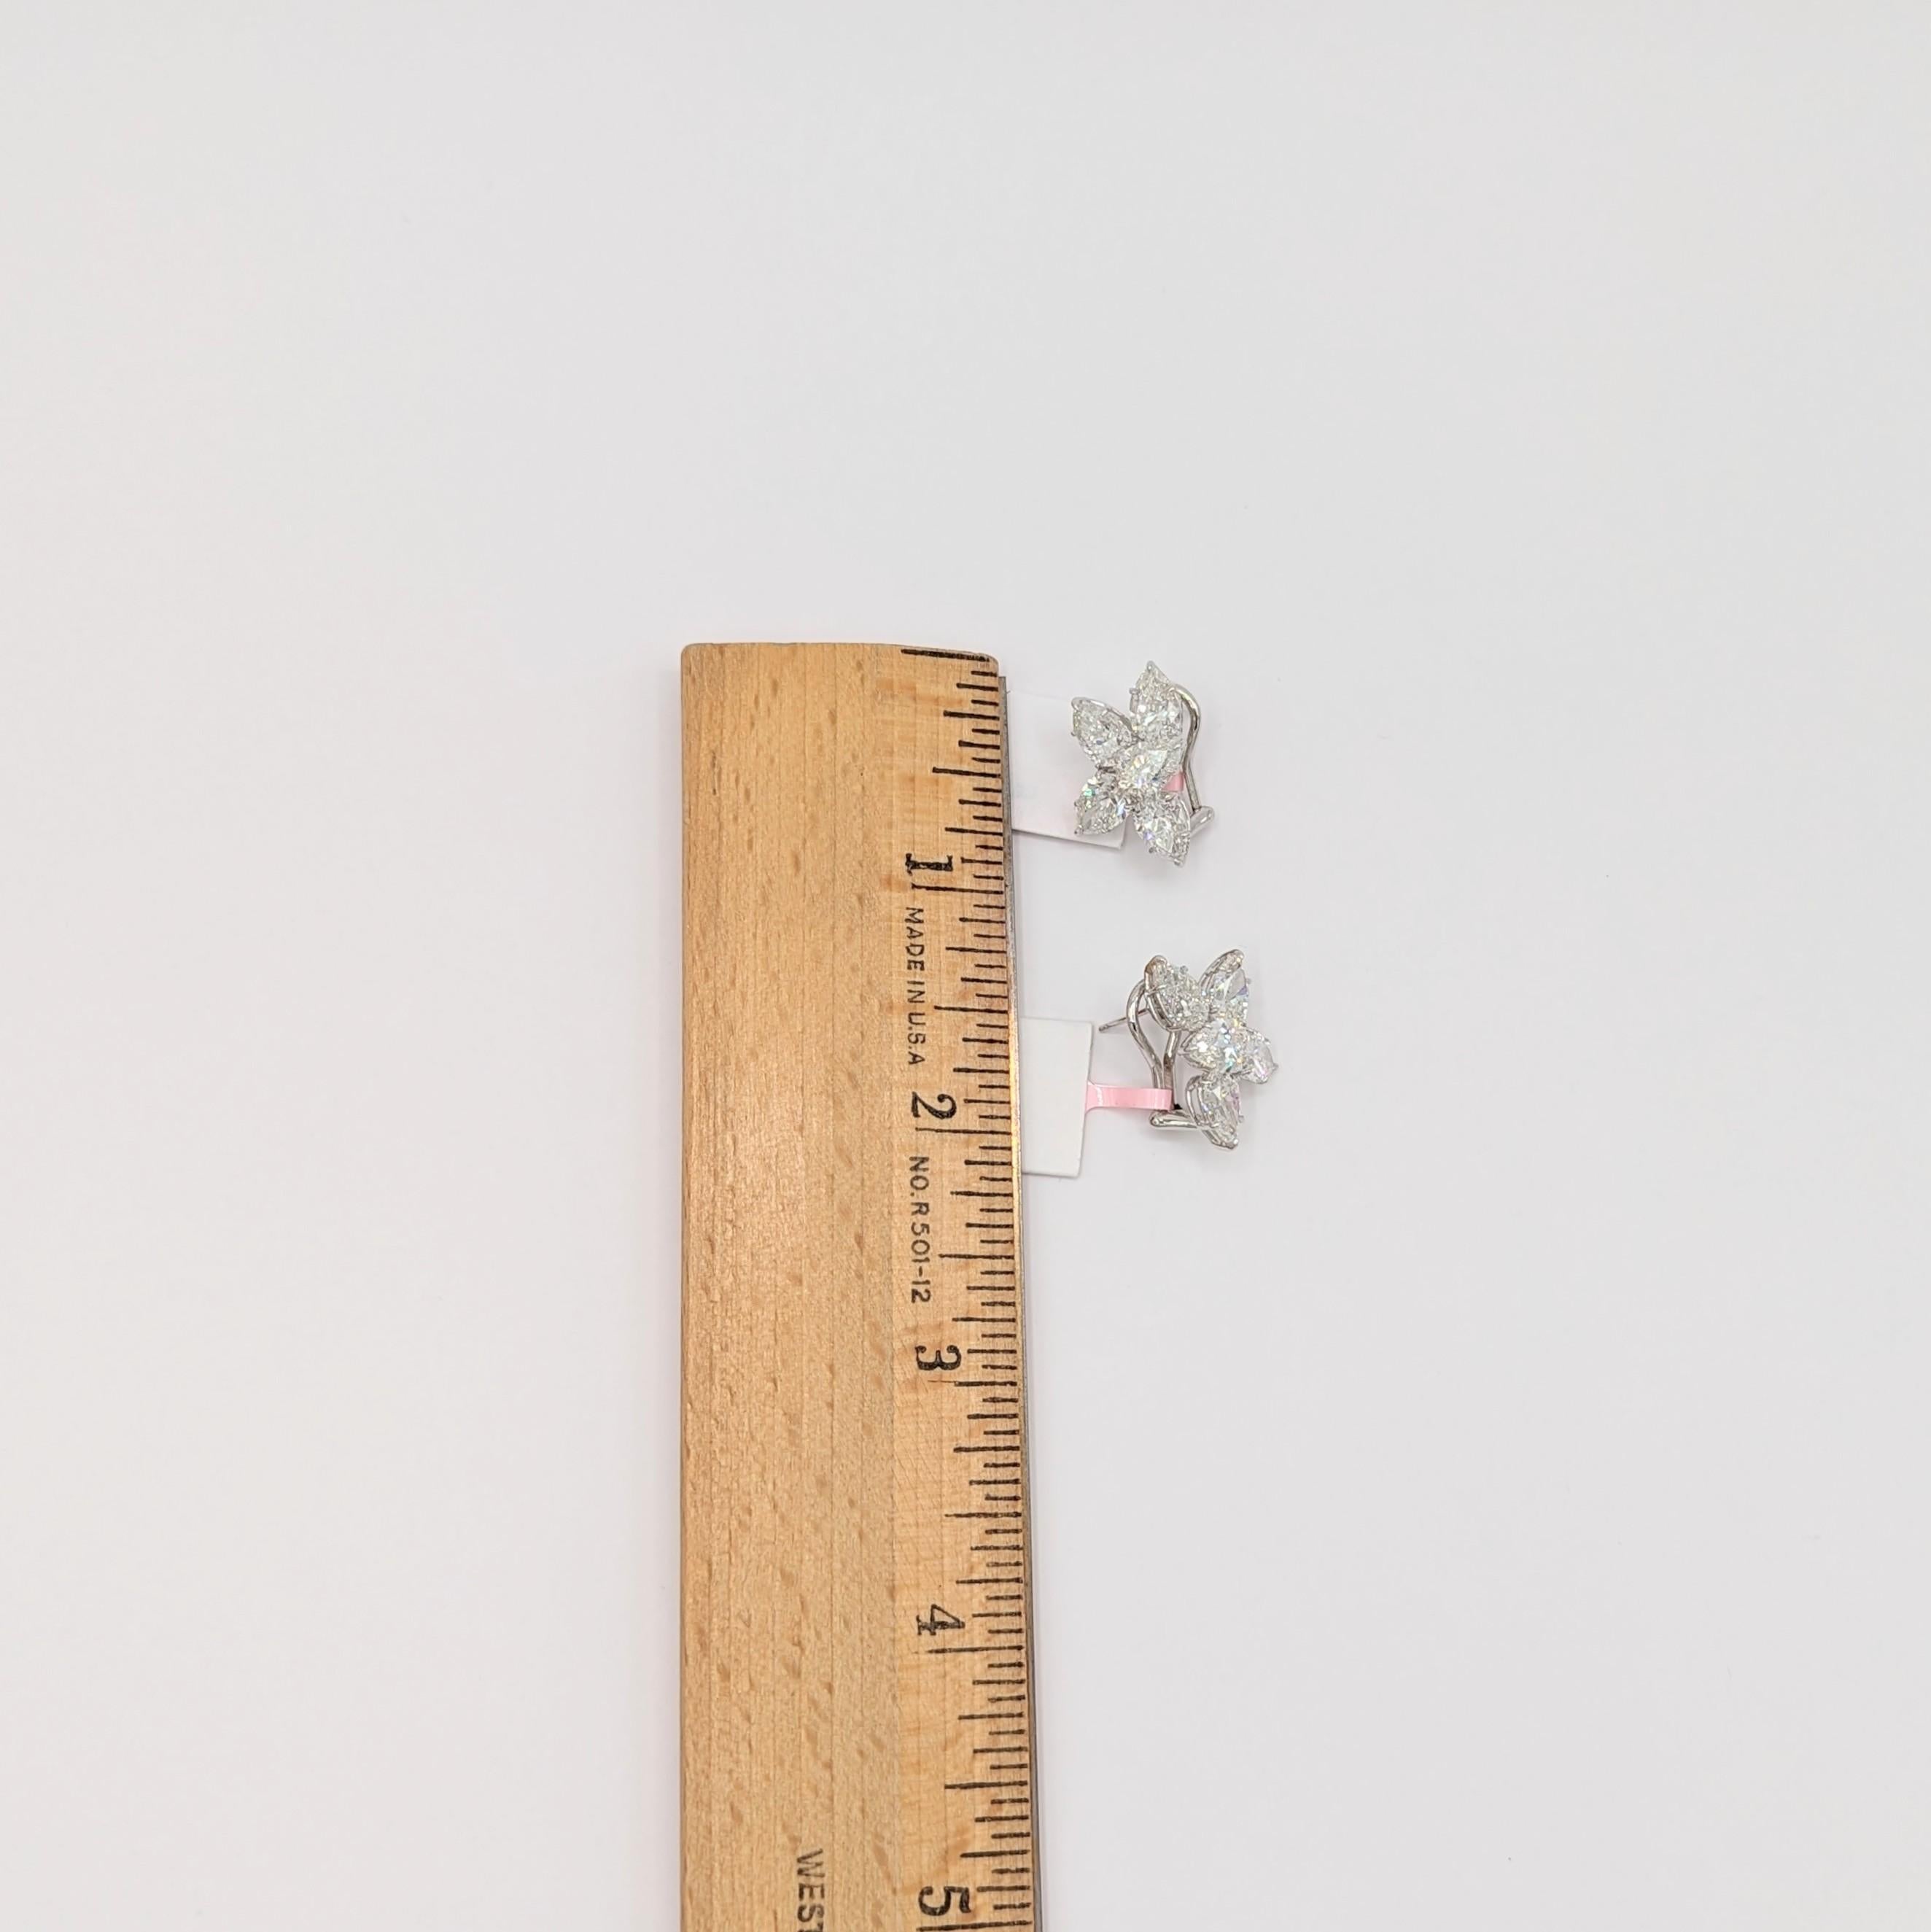 Women's or Men's GIA White Diamond Pear Shape Cluster Earrings in 18K White Gold For Sale